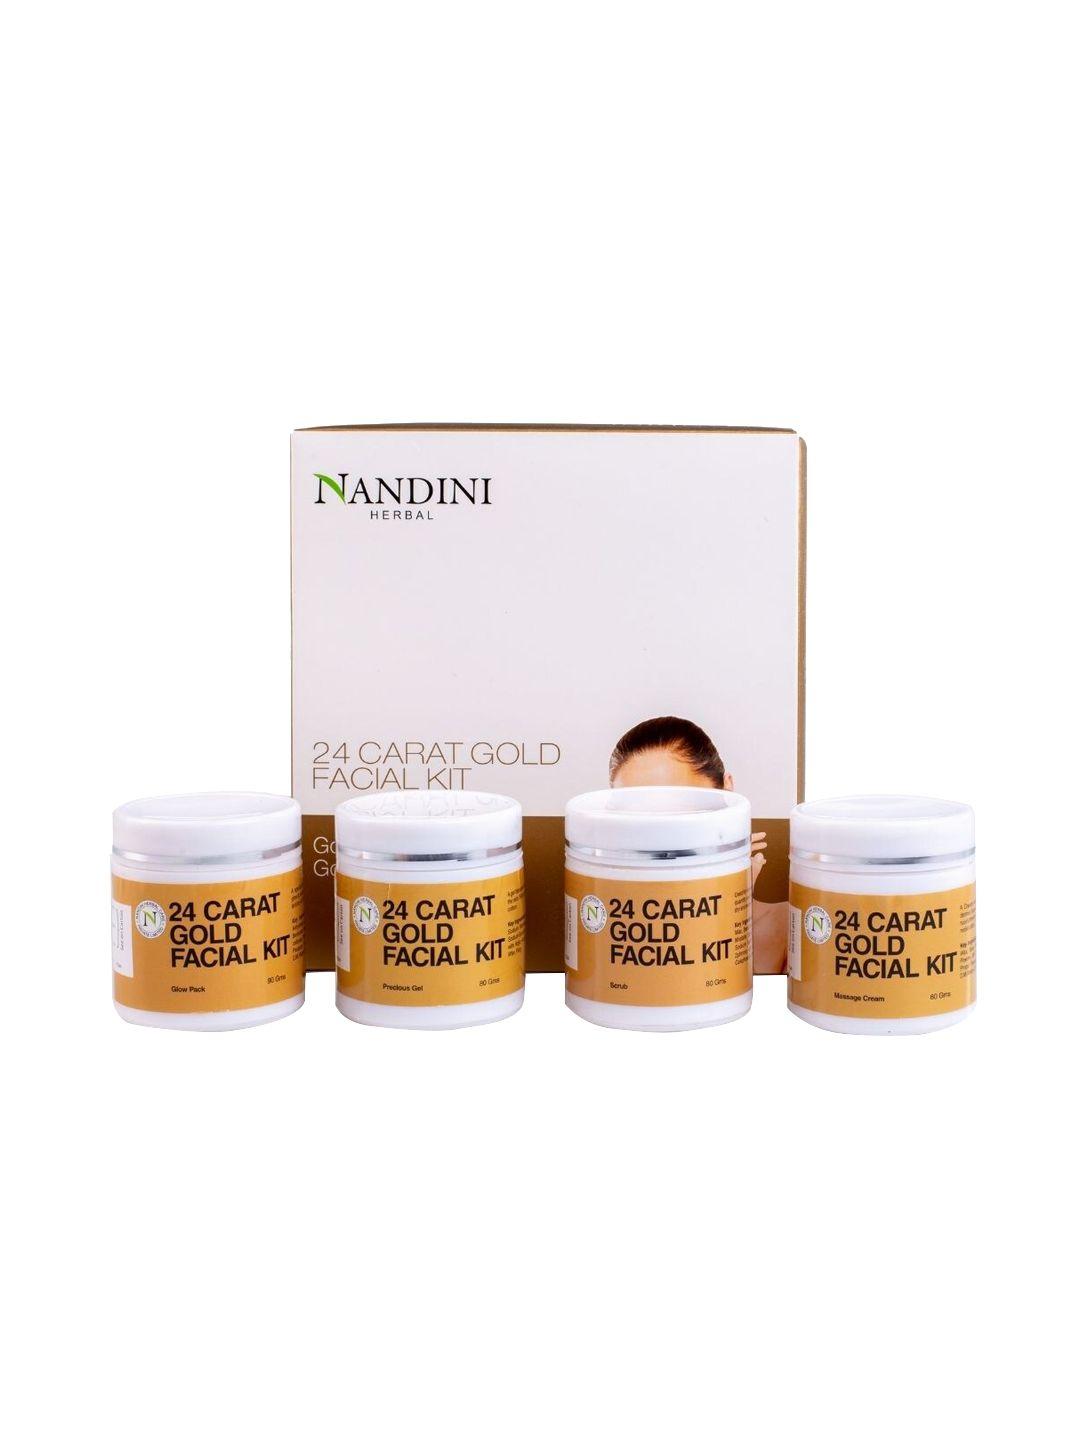 nandini herbal 24 carat gold facial kit 210 g